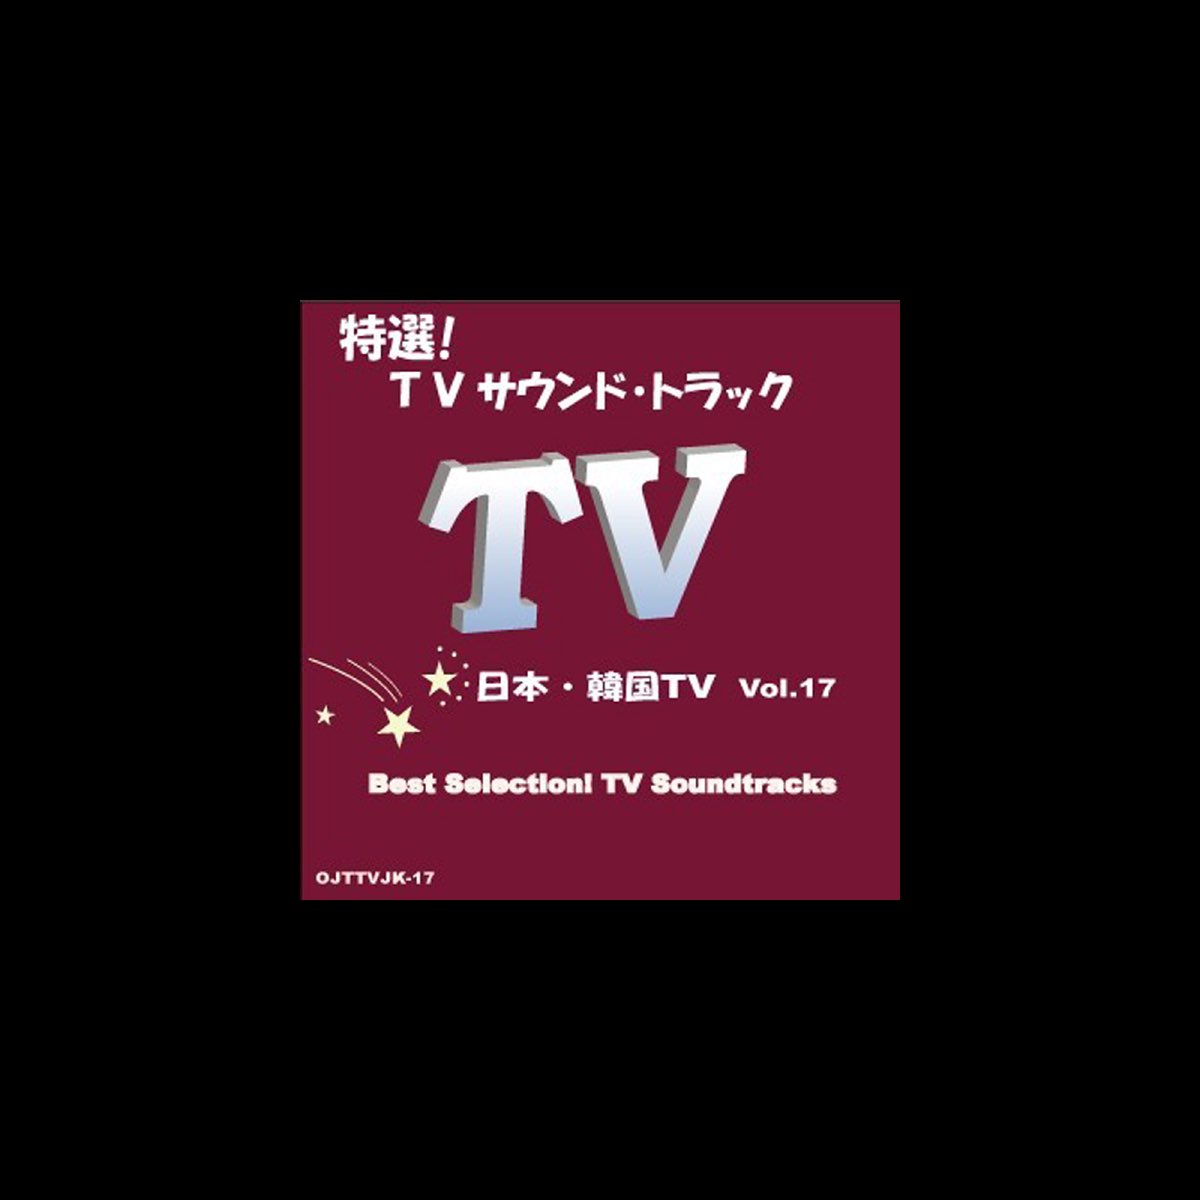 Albom 特選 Tvサウンド トラック 日本 韓国 Vol 17 Candy Band V Apple Music